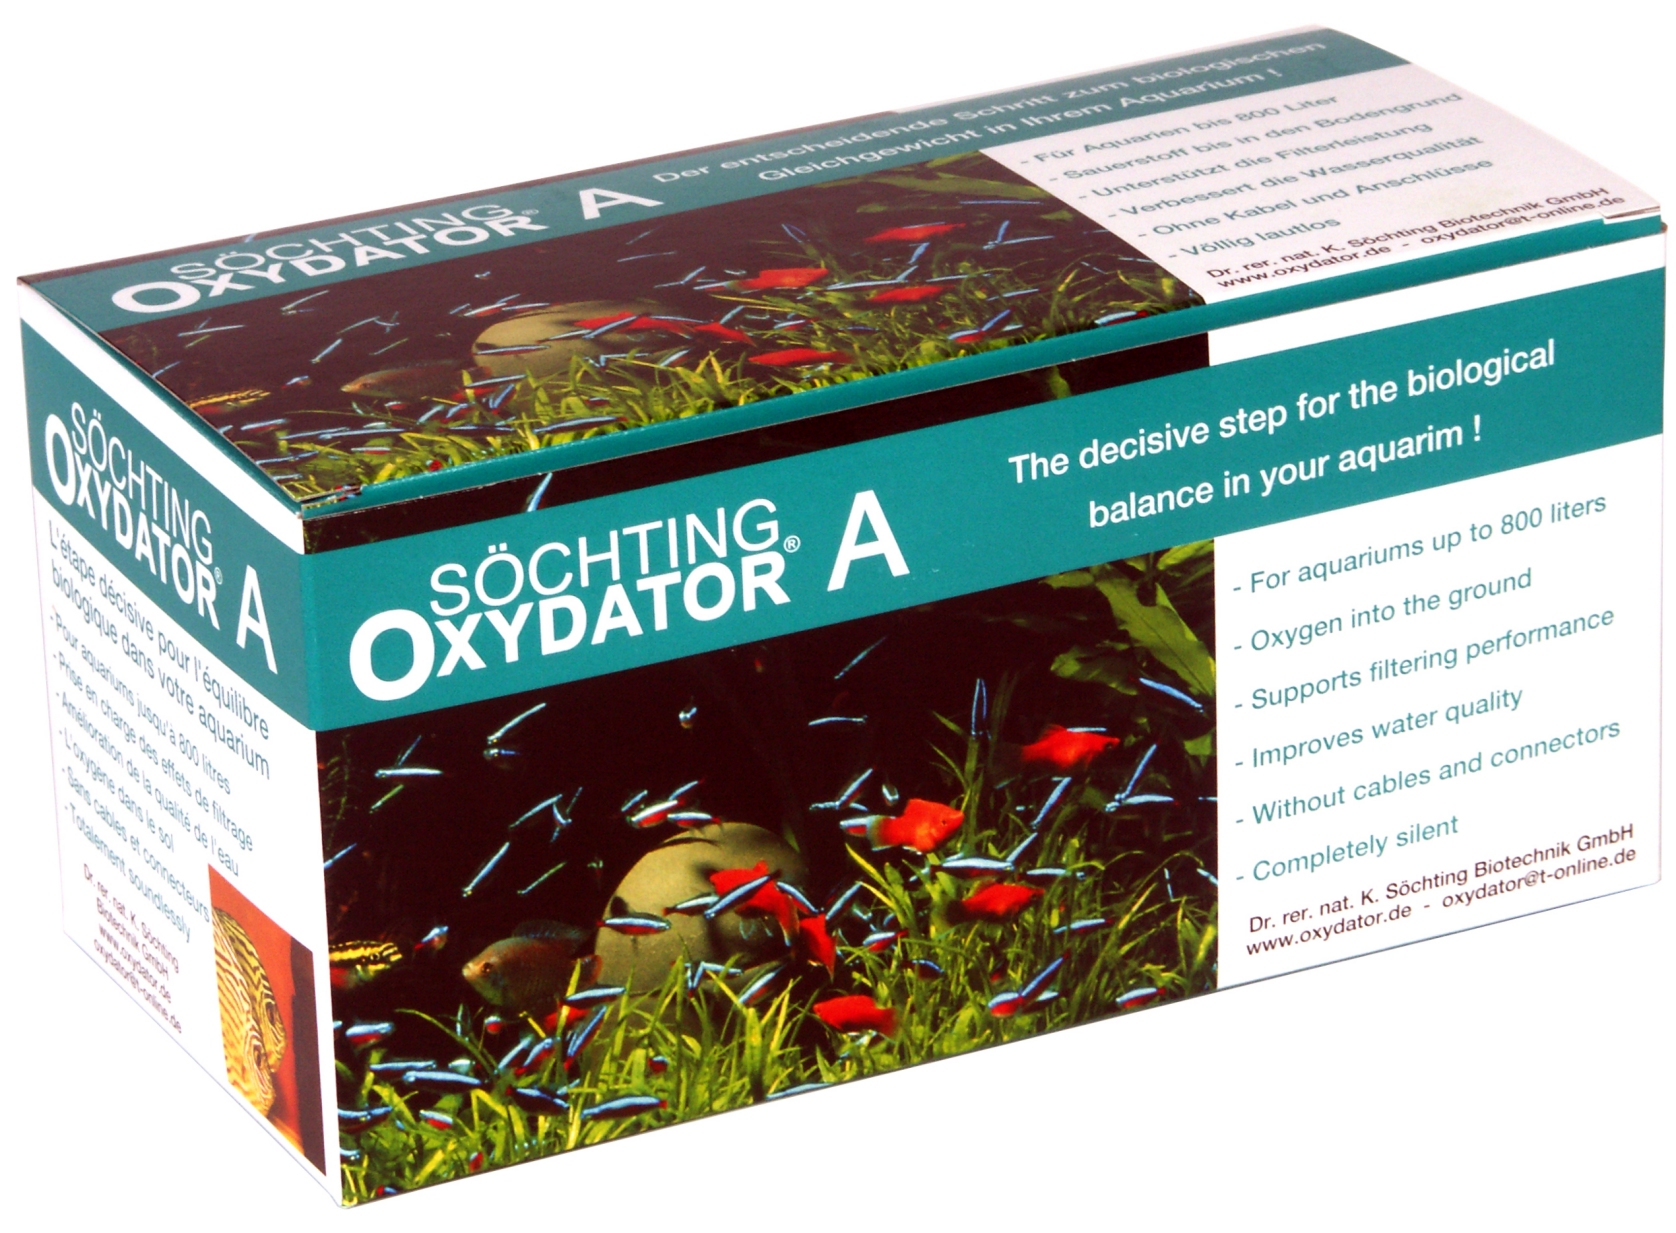 Oxydator A